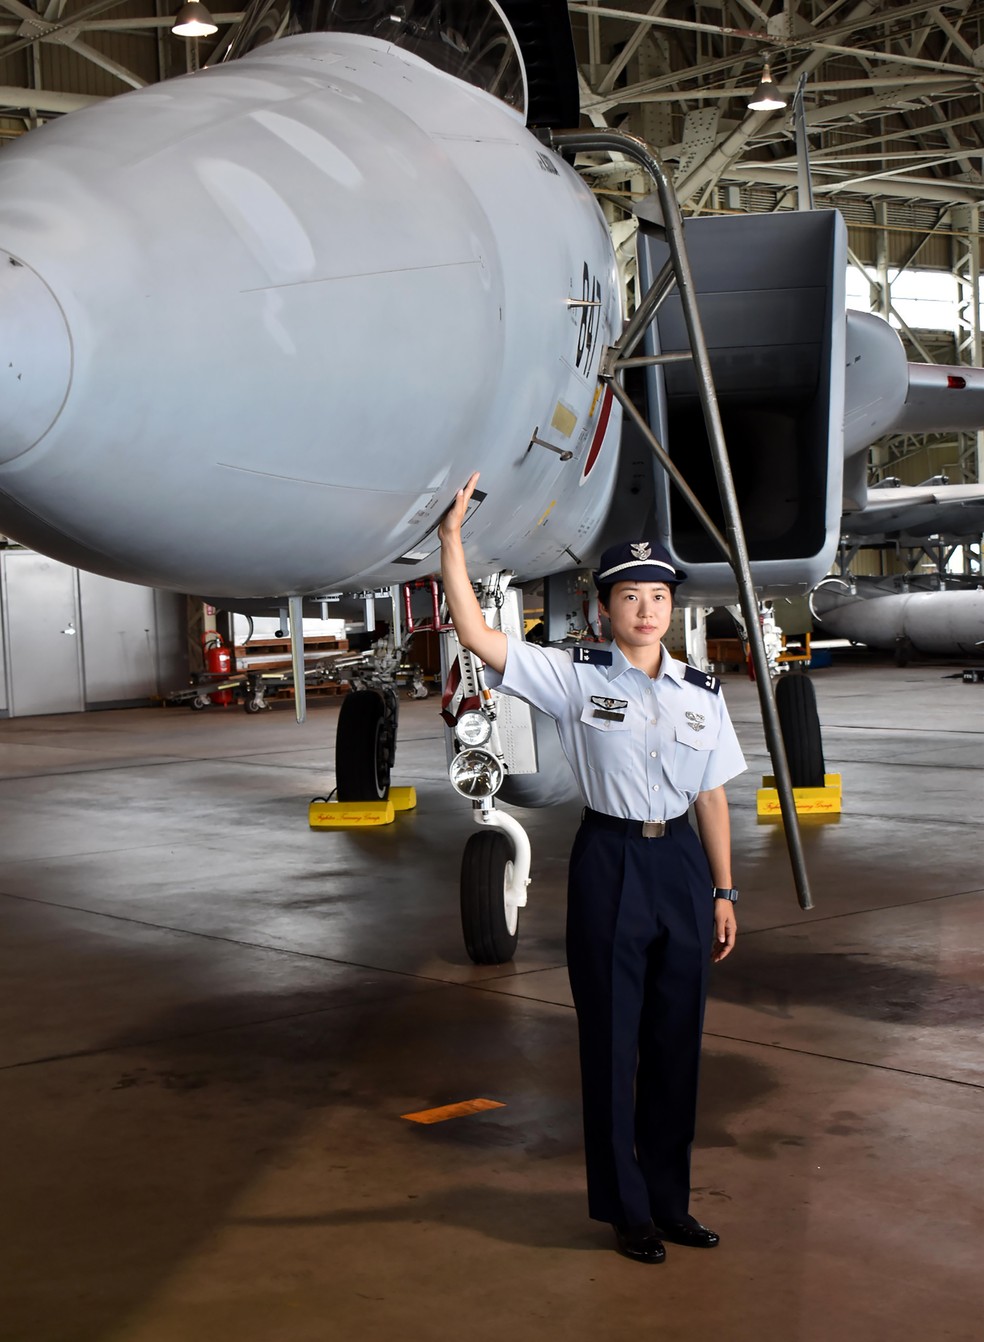 Primeira Tenente Misa Matsushima posa no cockpit de um caça de superioridade aérea F-15J na base aérea de Nyutabaru, nos arredores de Miyazaki (Foto: Jiji Press/AFP)